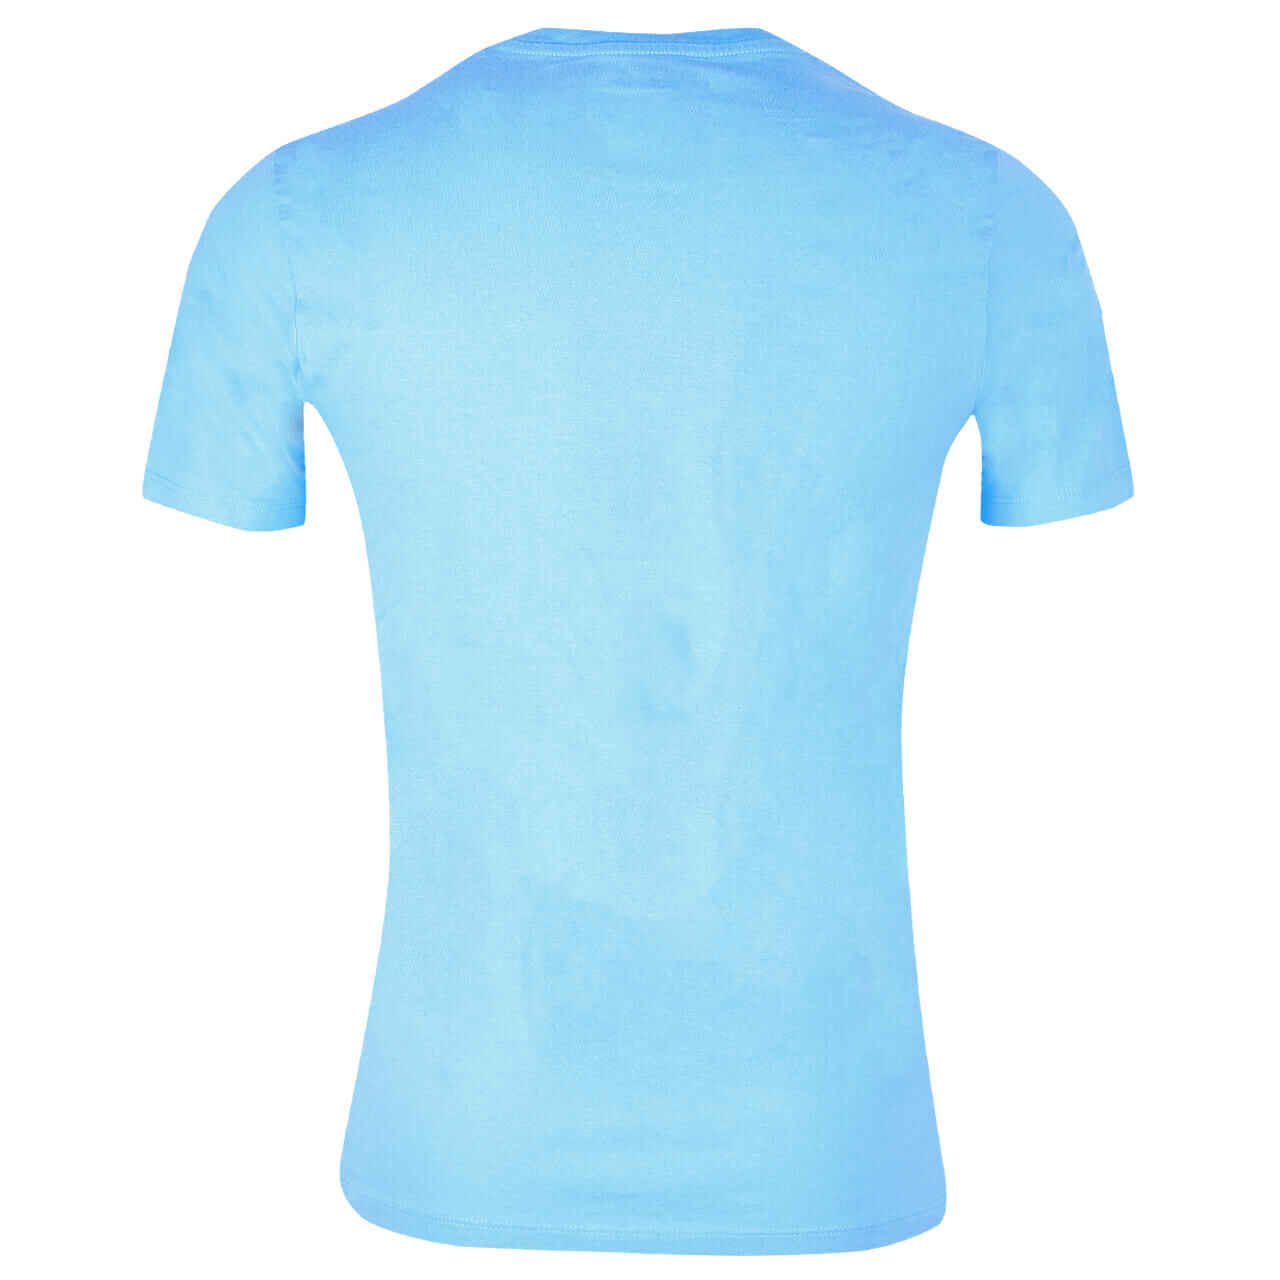 Levis Logo T-Shirt für Herren in Blau mit Schriftzug, FarbNr.: 1041